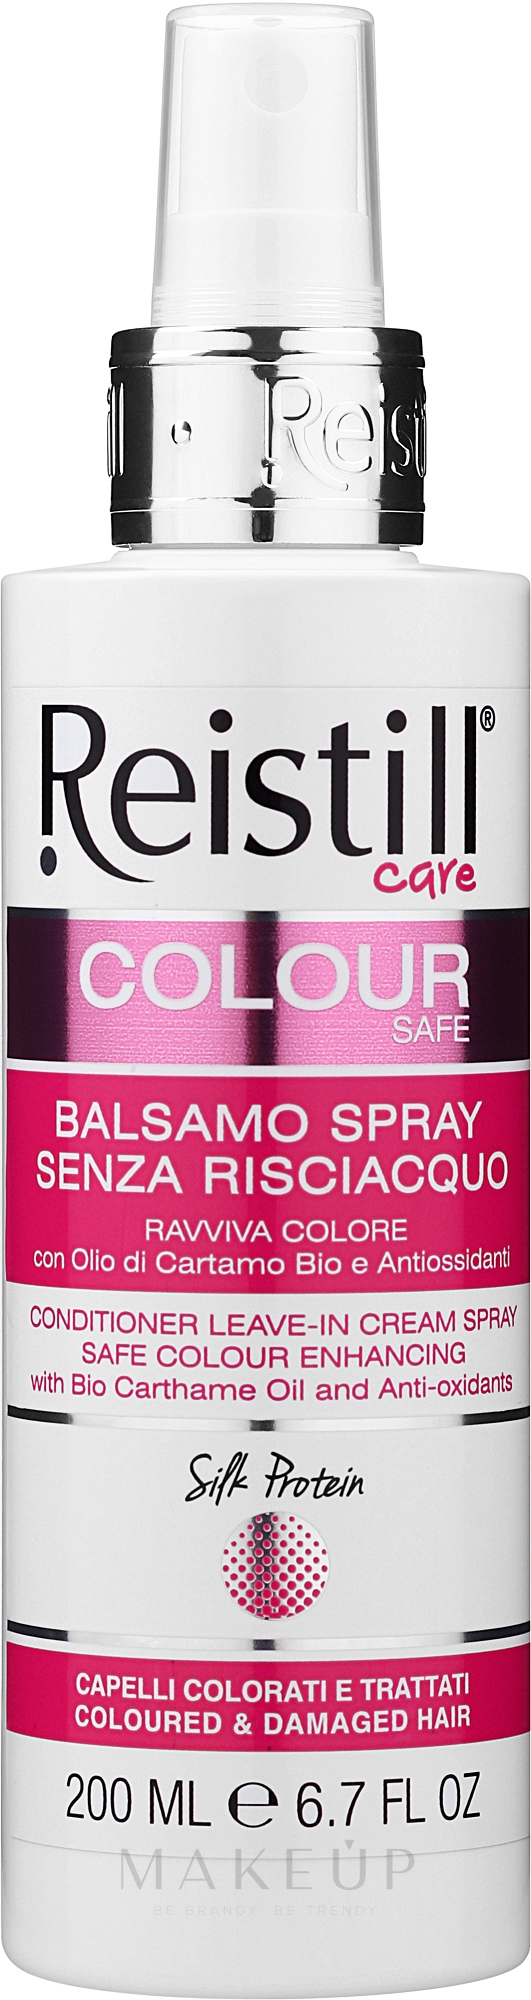 Leave-in Conditioner zum Schutz der Haarfarbe - Reistill Colour Care Conditioner Leave-in Cream Spray — Bild 200 ml